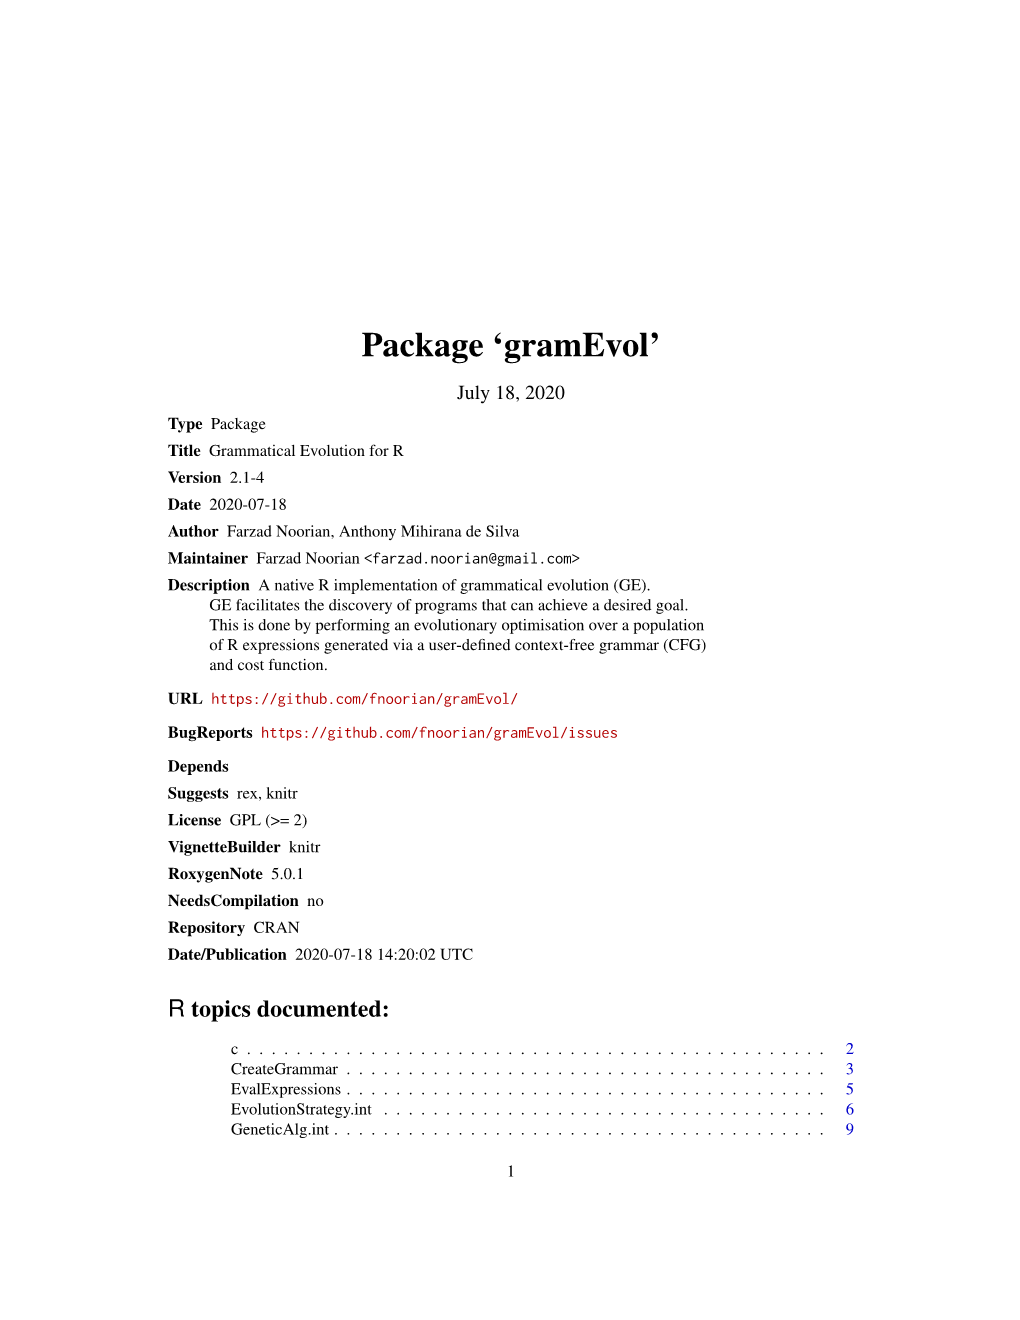 Package 'Gramevol'